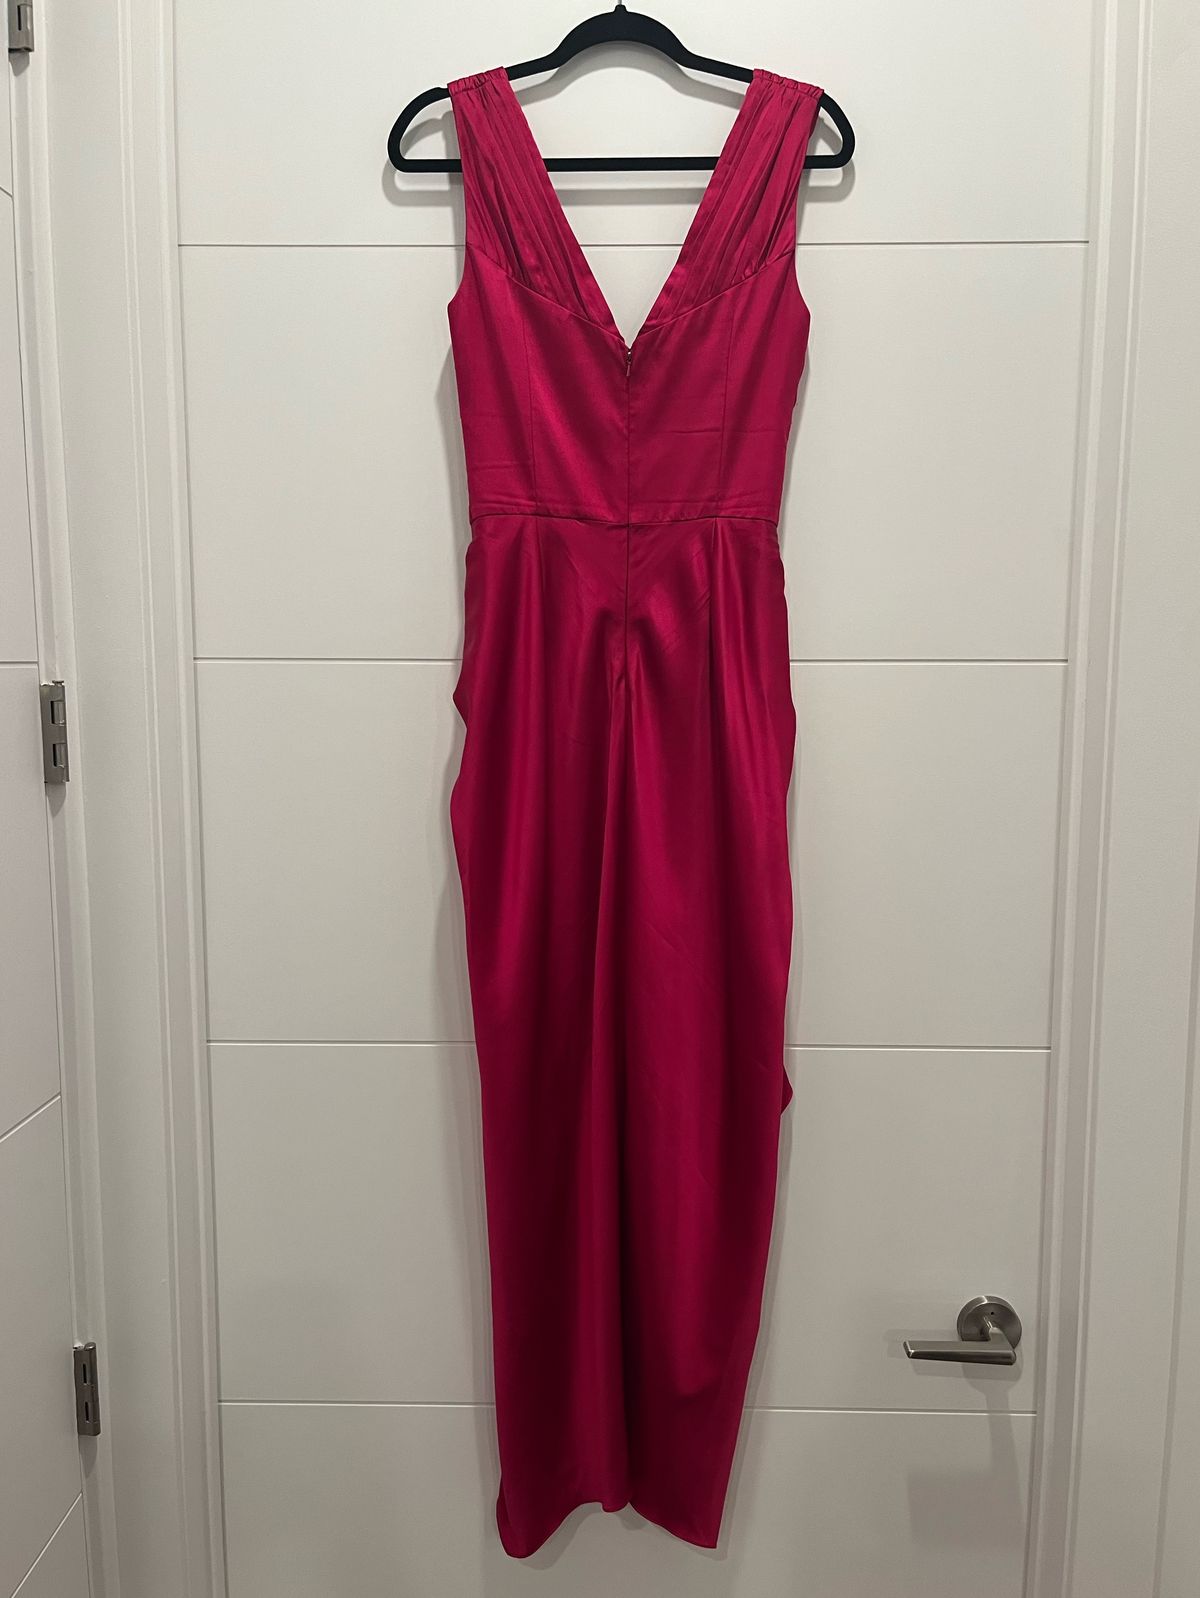 Flor et Al Size 2 Prom Satin Hot Pink Cocktail Dress on Queenly